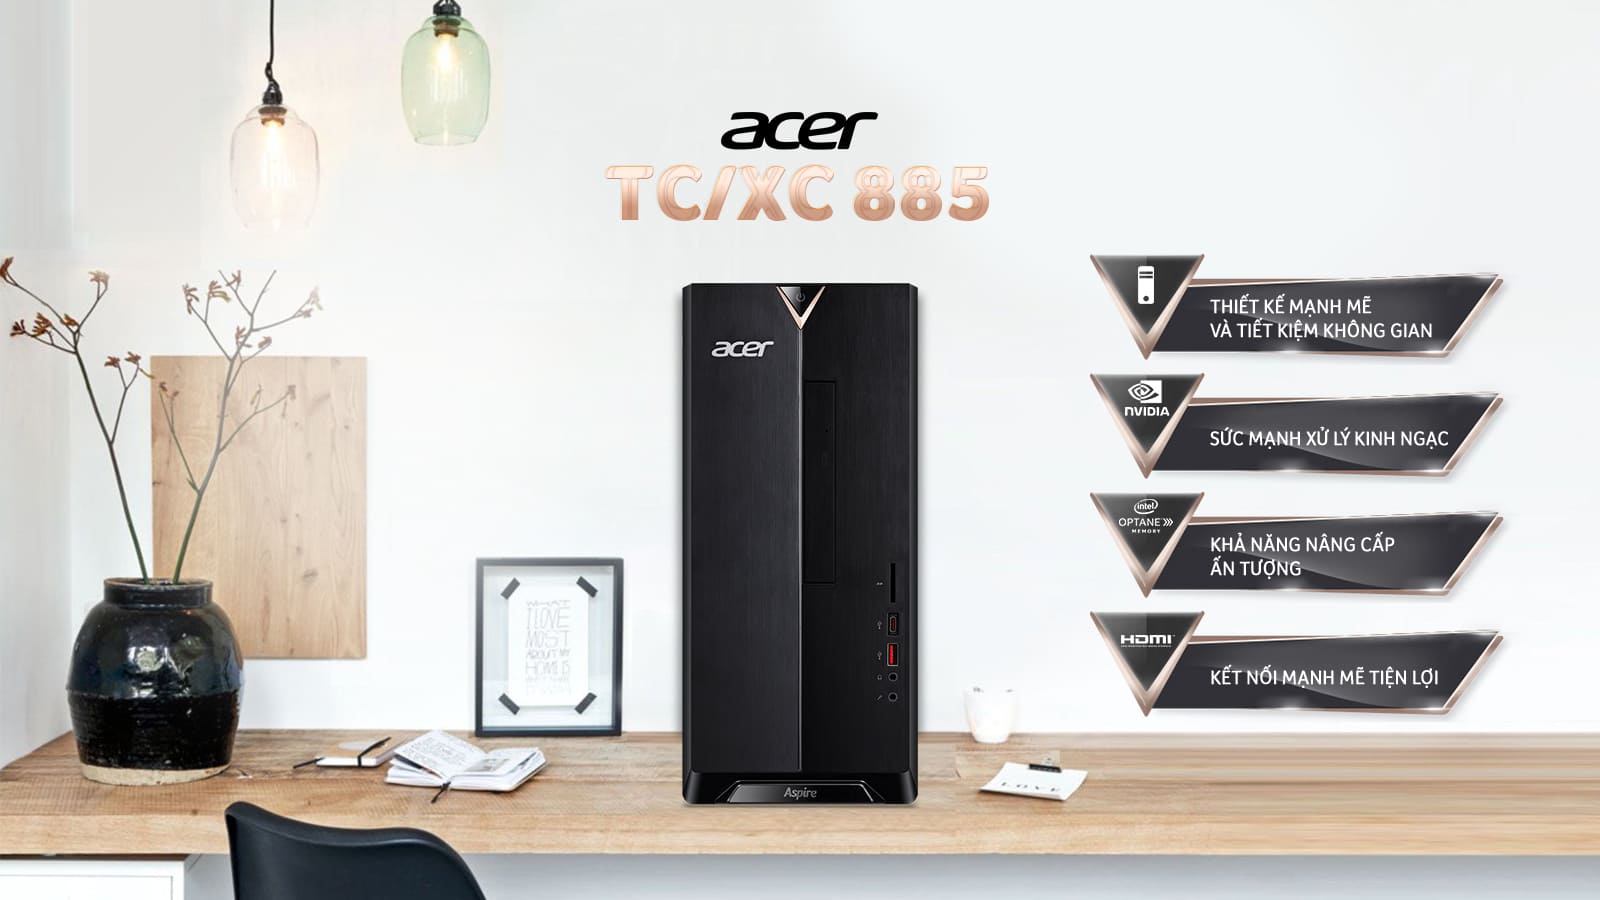 Máy tính để bàn Acer Aspire XC885 - Hiệu năng vượt trội cho hiệu suất làm việc tối đa